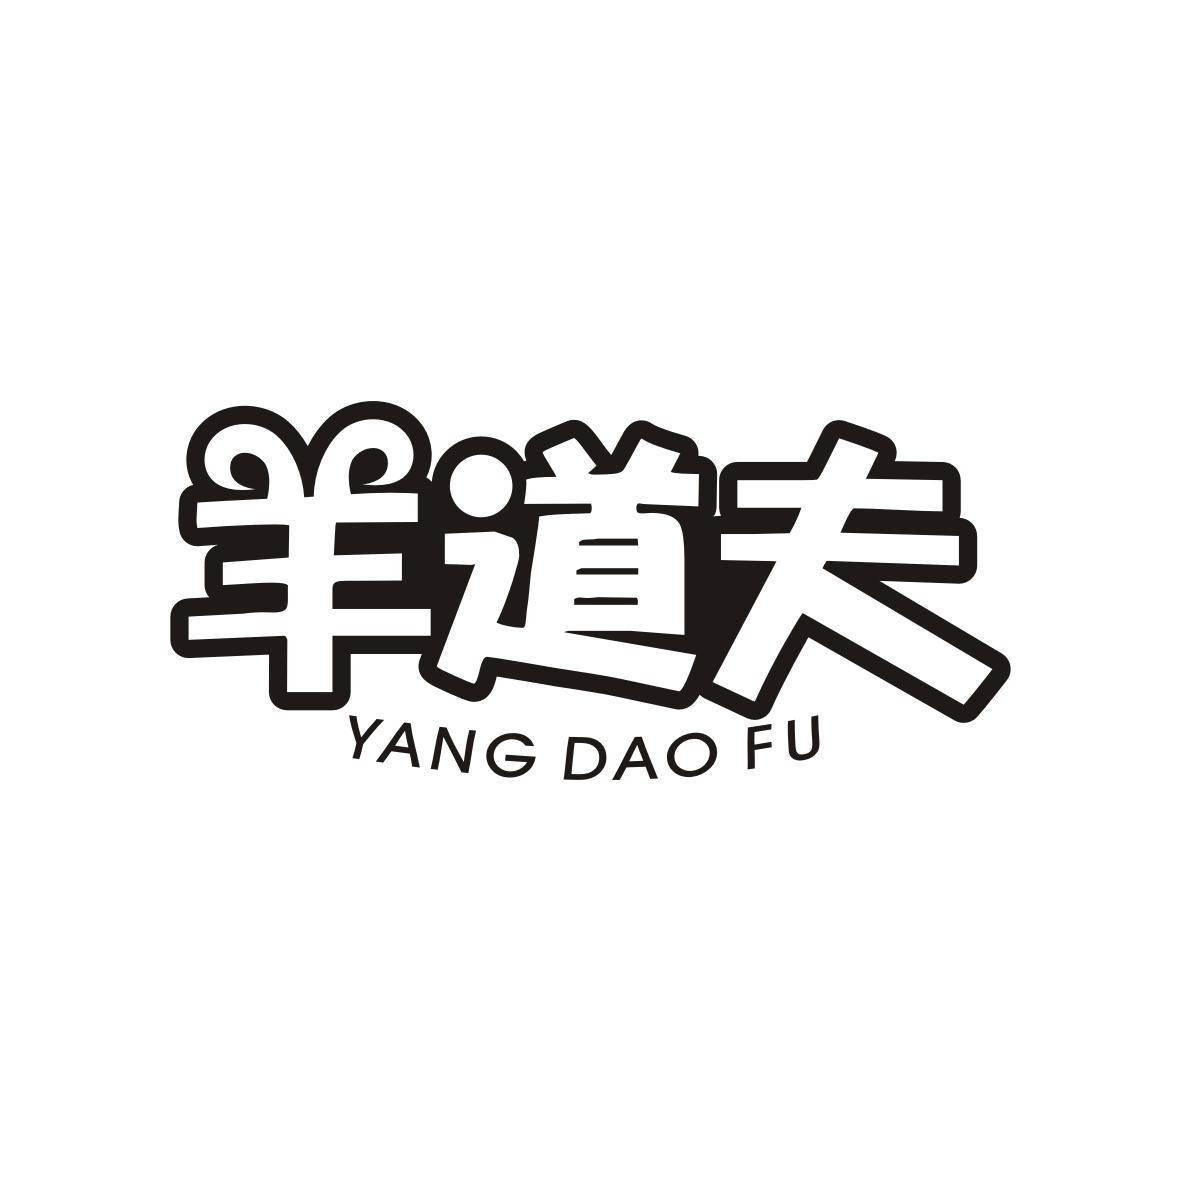 羊道夫
Yang Dao Fu